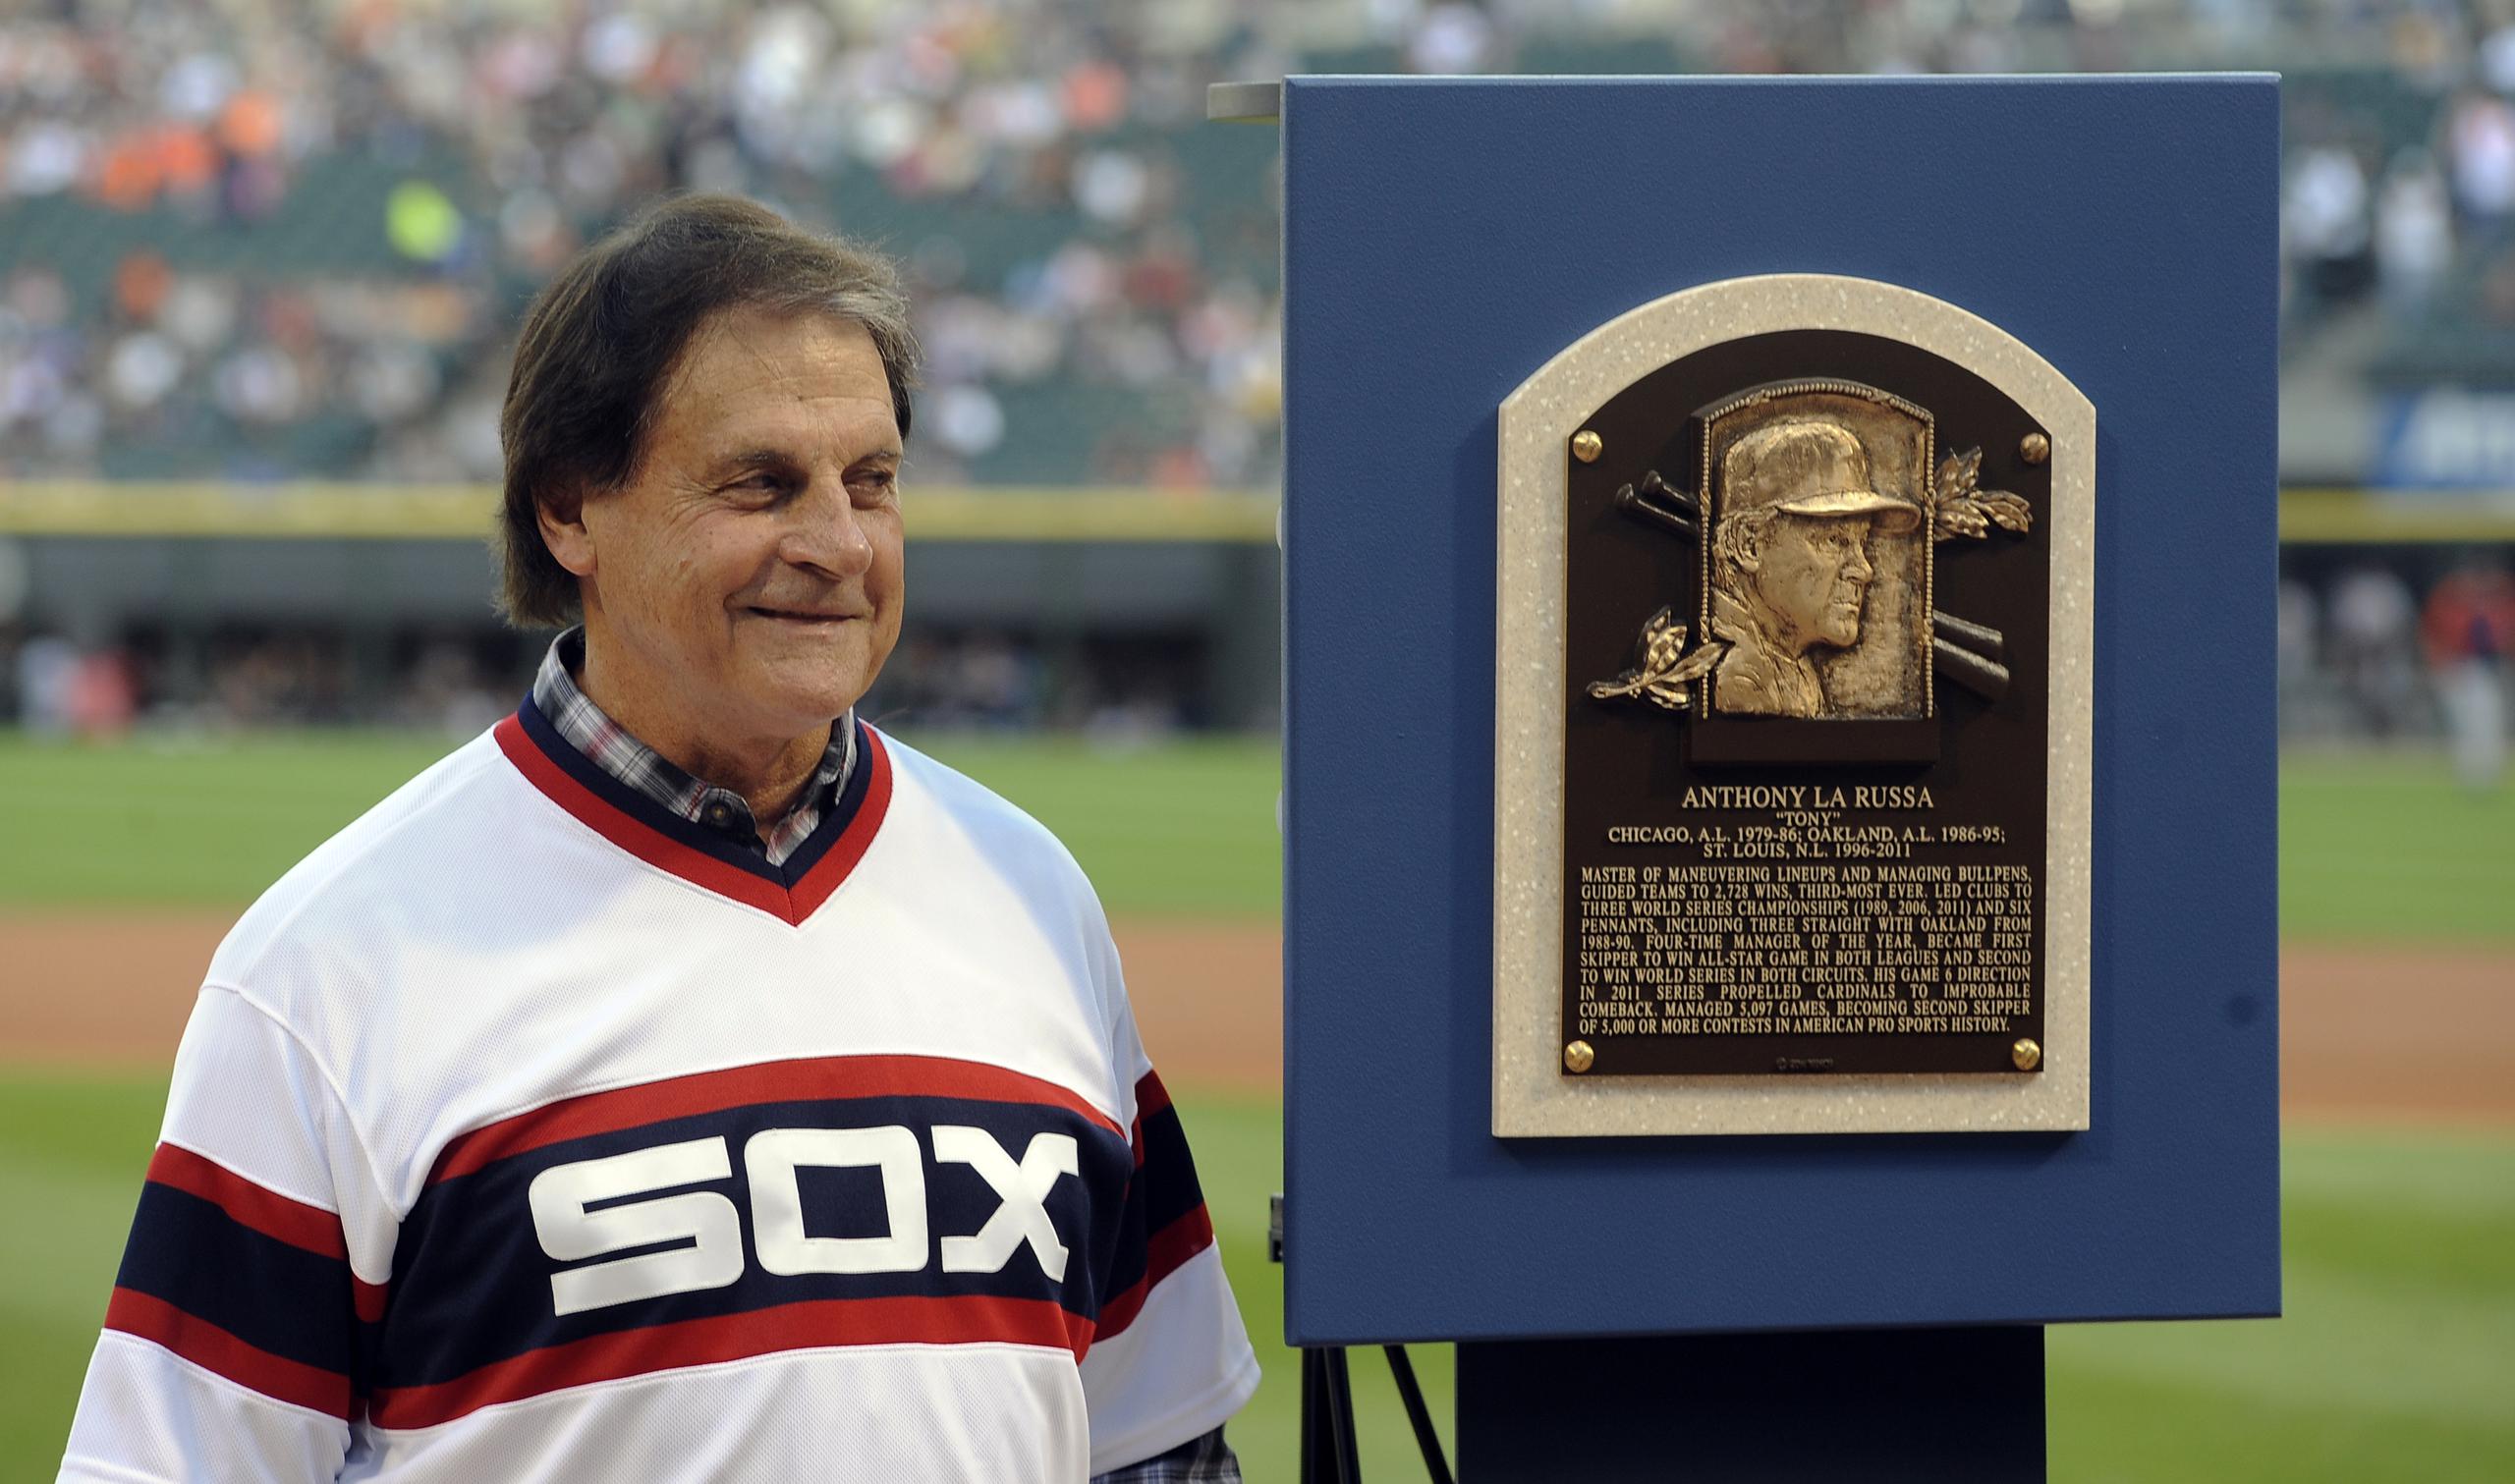 El veterano dirigente y asesor, Tony La Russa, de 76 años, fue contratado el jueves como nuevo dirigente de los White Sox de Chicago.